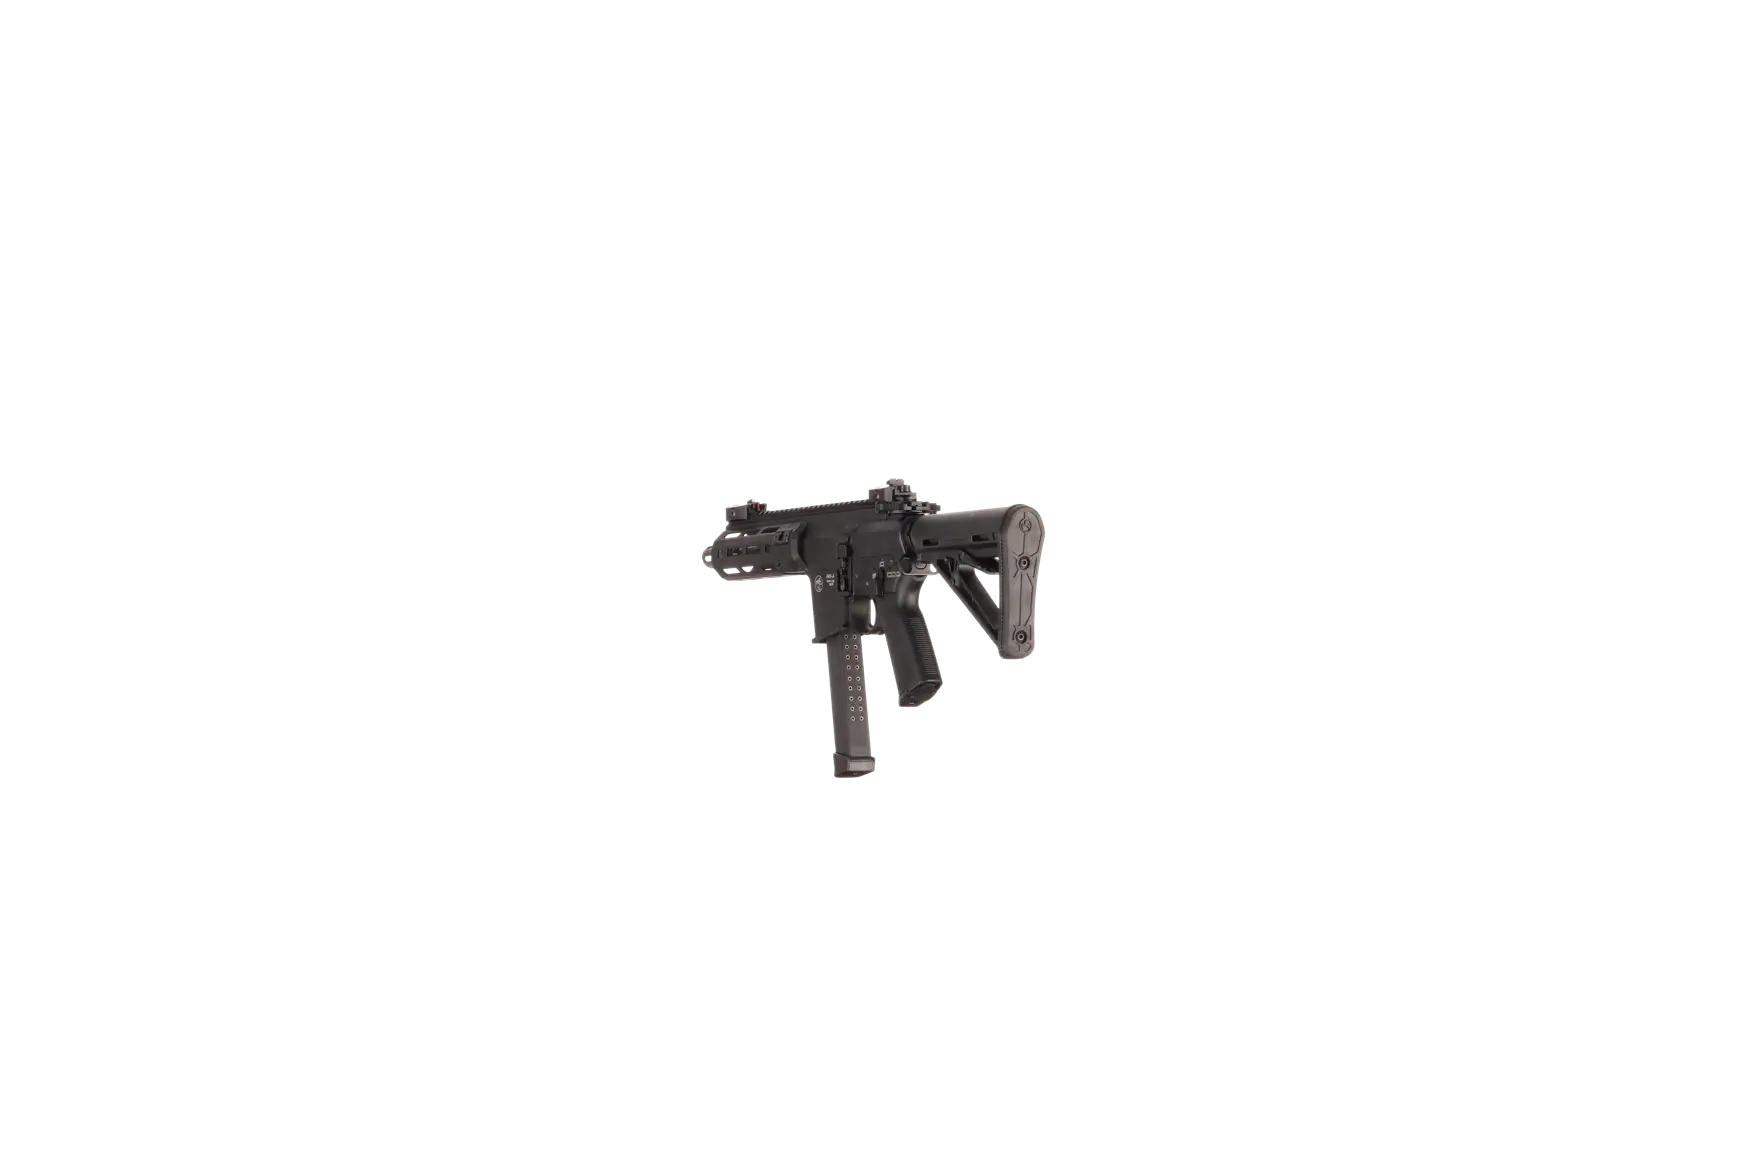 Náhledový obrázek pušky V-AR 9mm luger SPINVIEW 1 R49